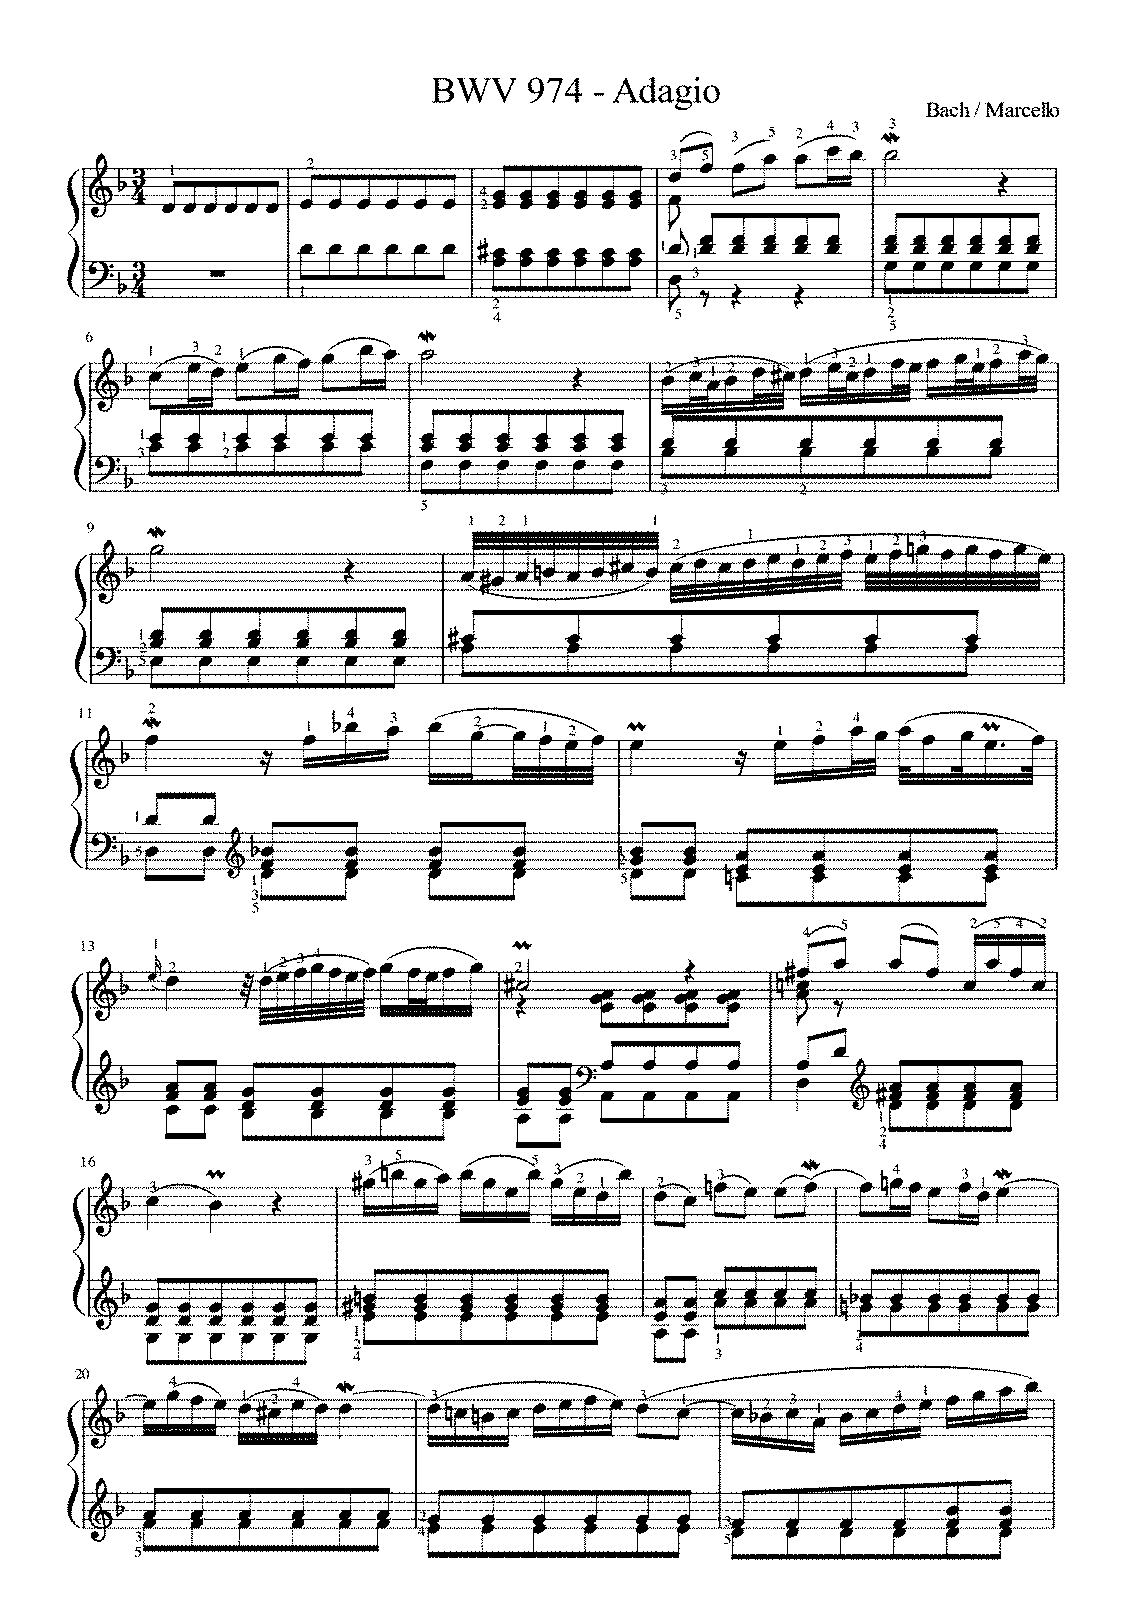 Концерт ре минор для скрипки баха. Бах Марчелло Адажио Ноты. Бах Марчелло Ноты для фортепиано. Бах Марчелло Адажио BWV 974. Бах Марчелло Адажио Ре минор Ноты для фортепиано.